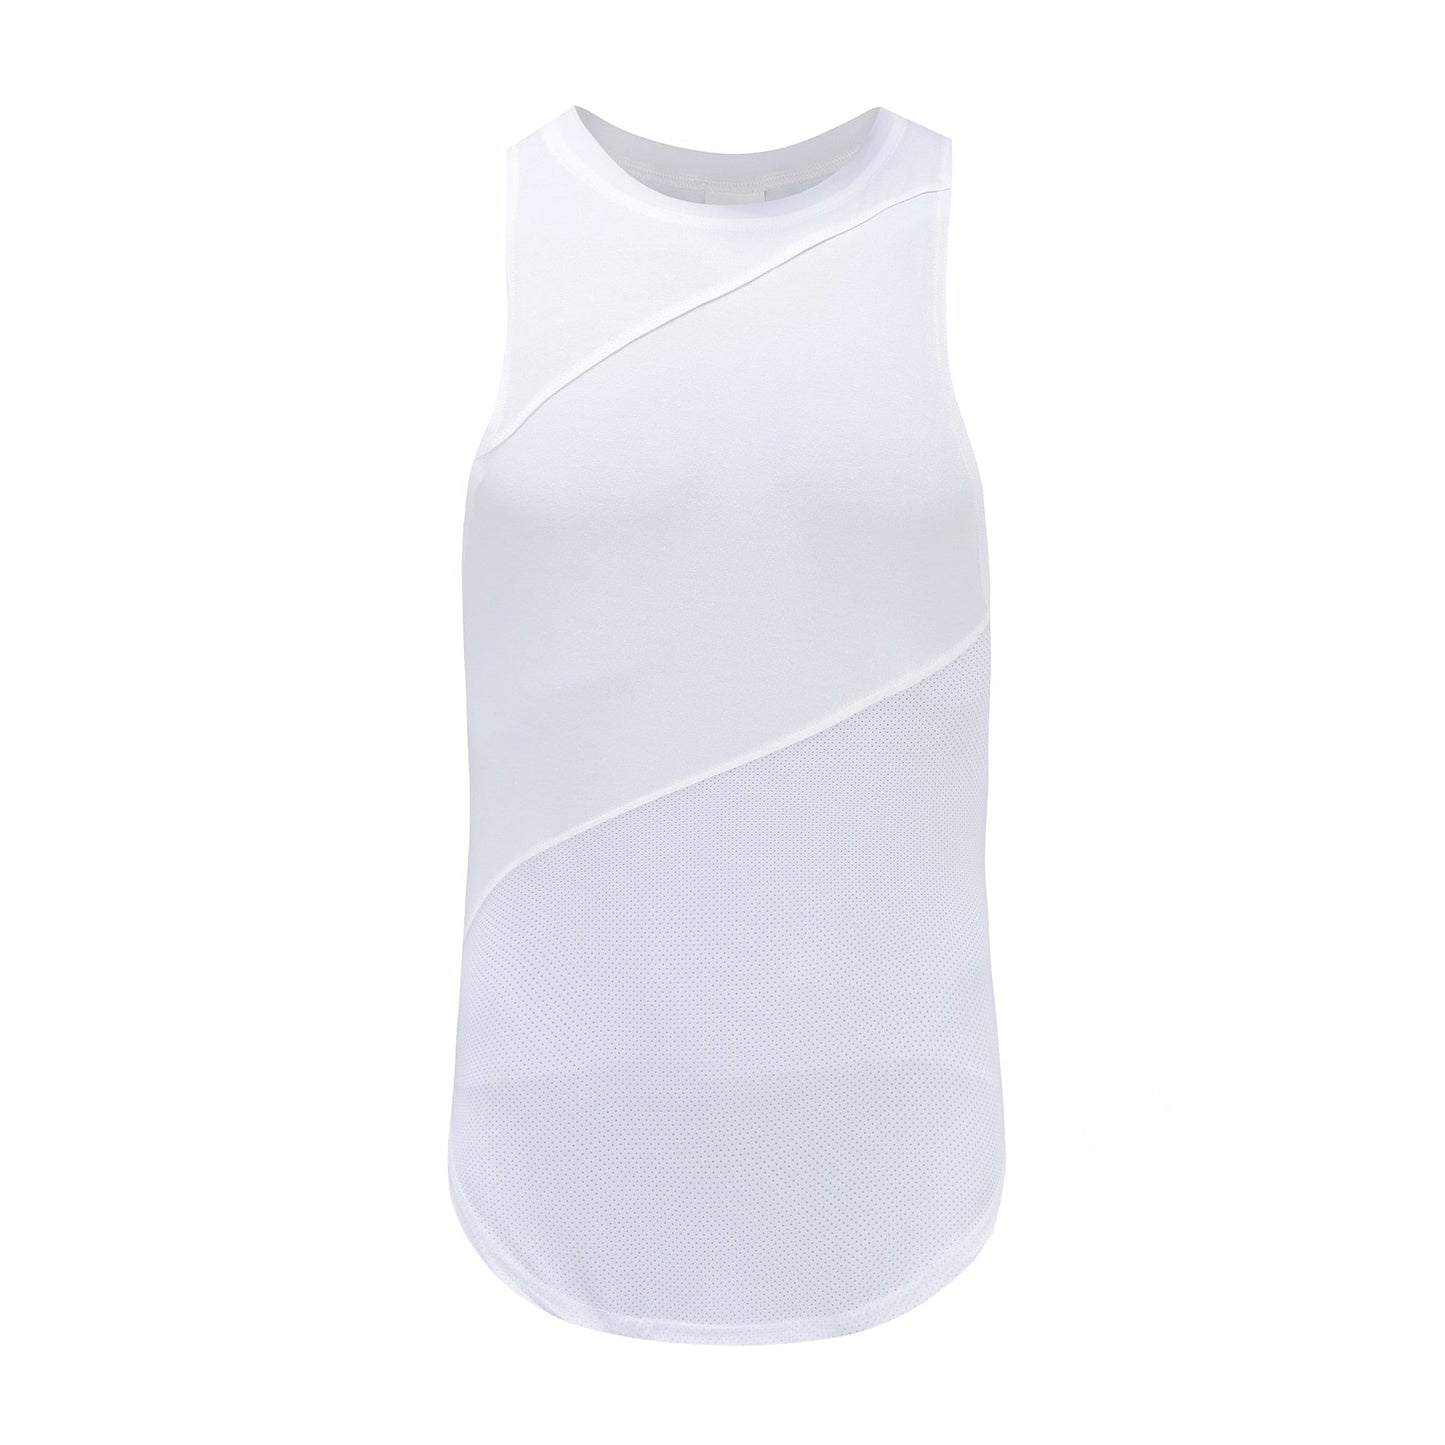 Bodybuilding sleeveless cotton shirt white